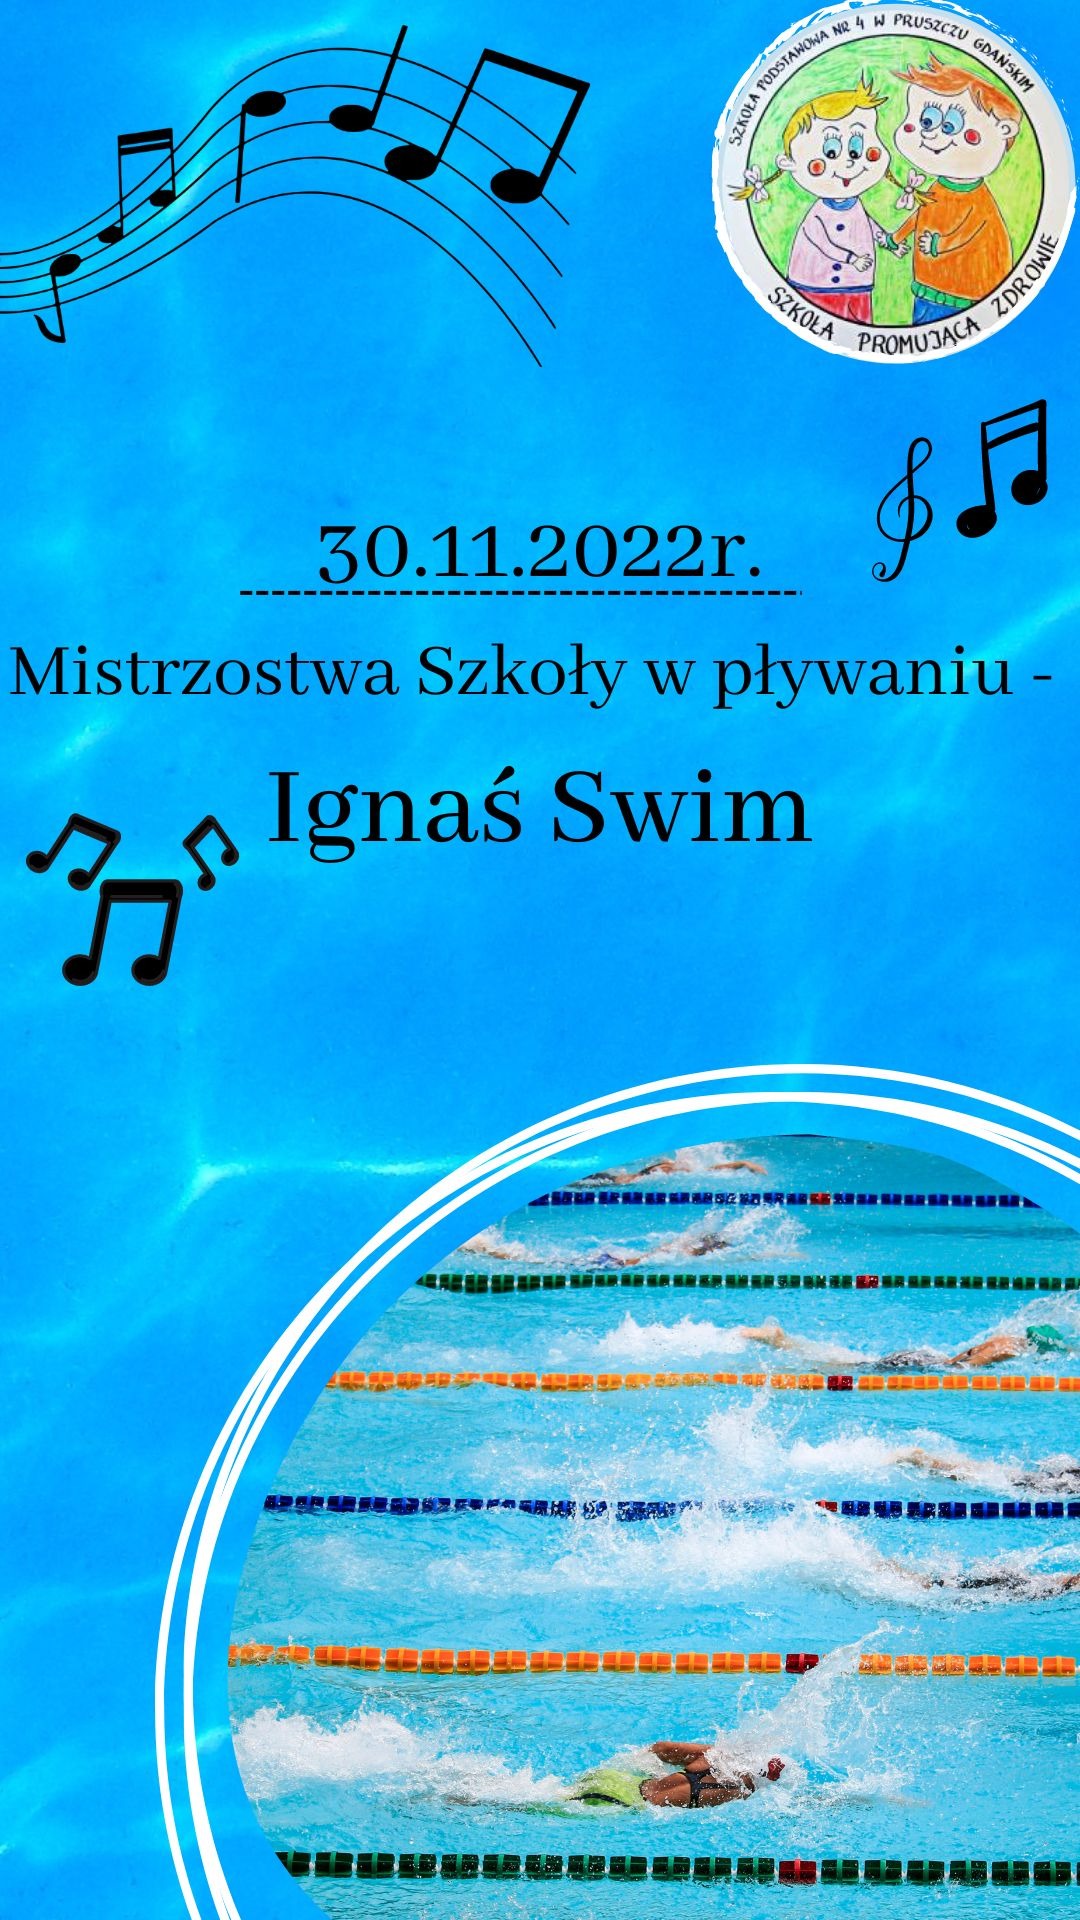 Mistrzostwa Szkoły w pływaniu "Ignaś Swim" - Obrazek 1